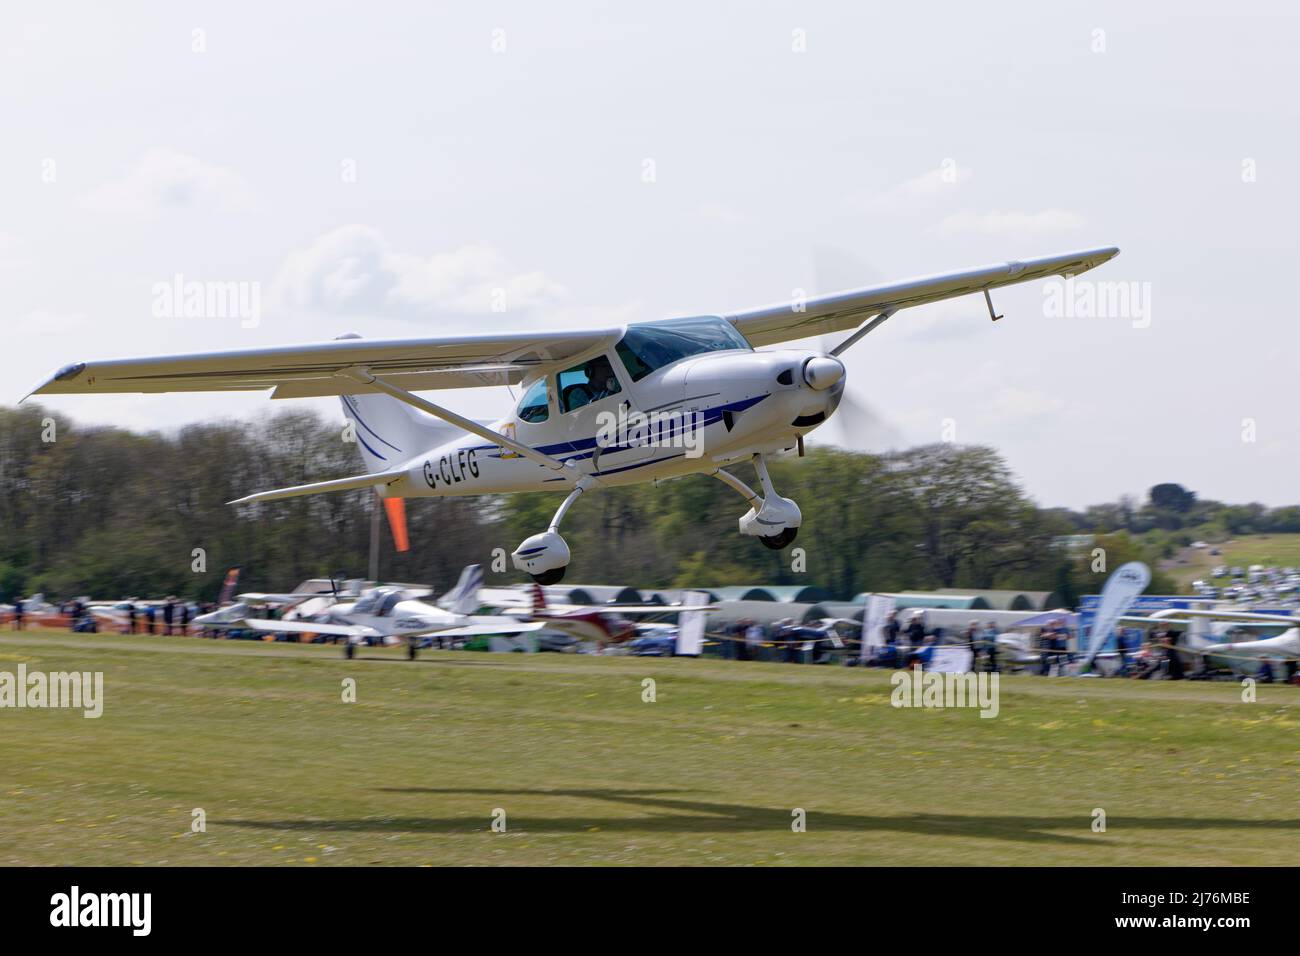 El encantador avión microligero blanco Sirius TL3000 G-CLFG sale del aeródromo de Popham en Hampshire Inglaterra después de asistir al vuelo anual de los aviones Foto de stock